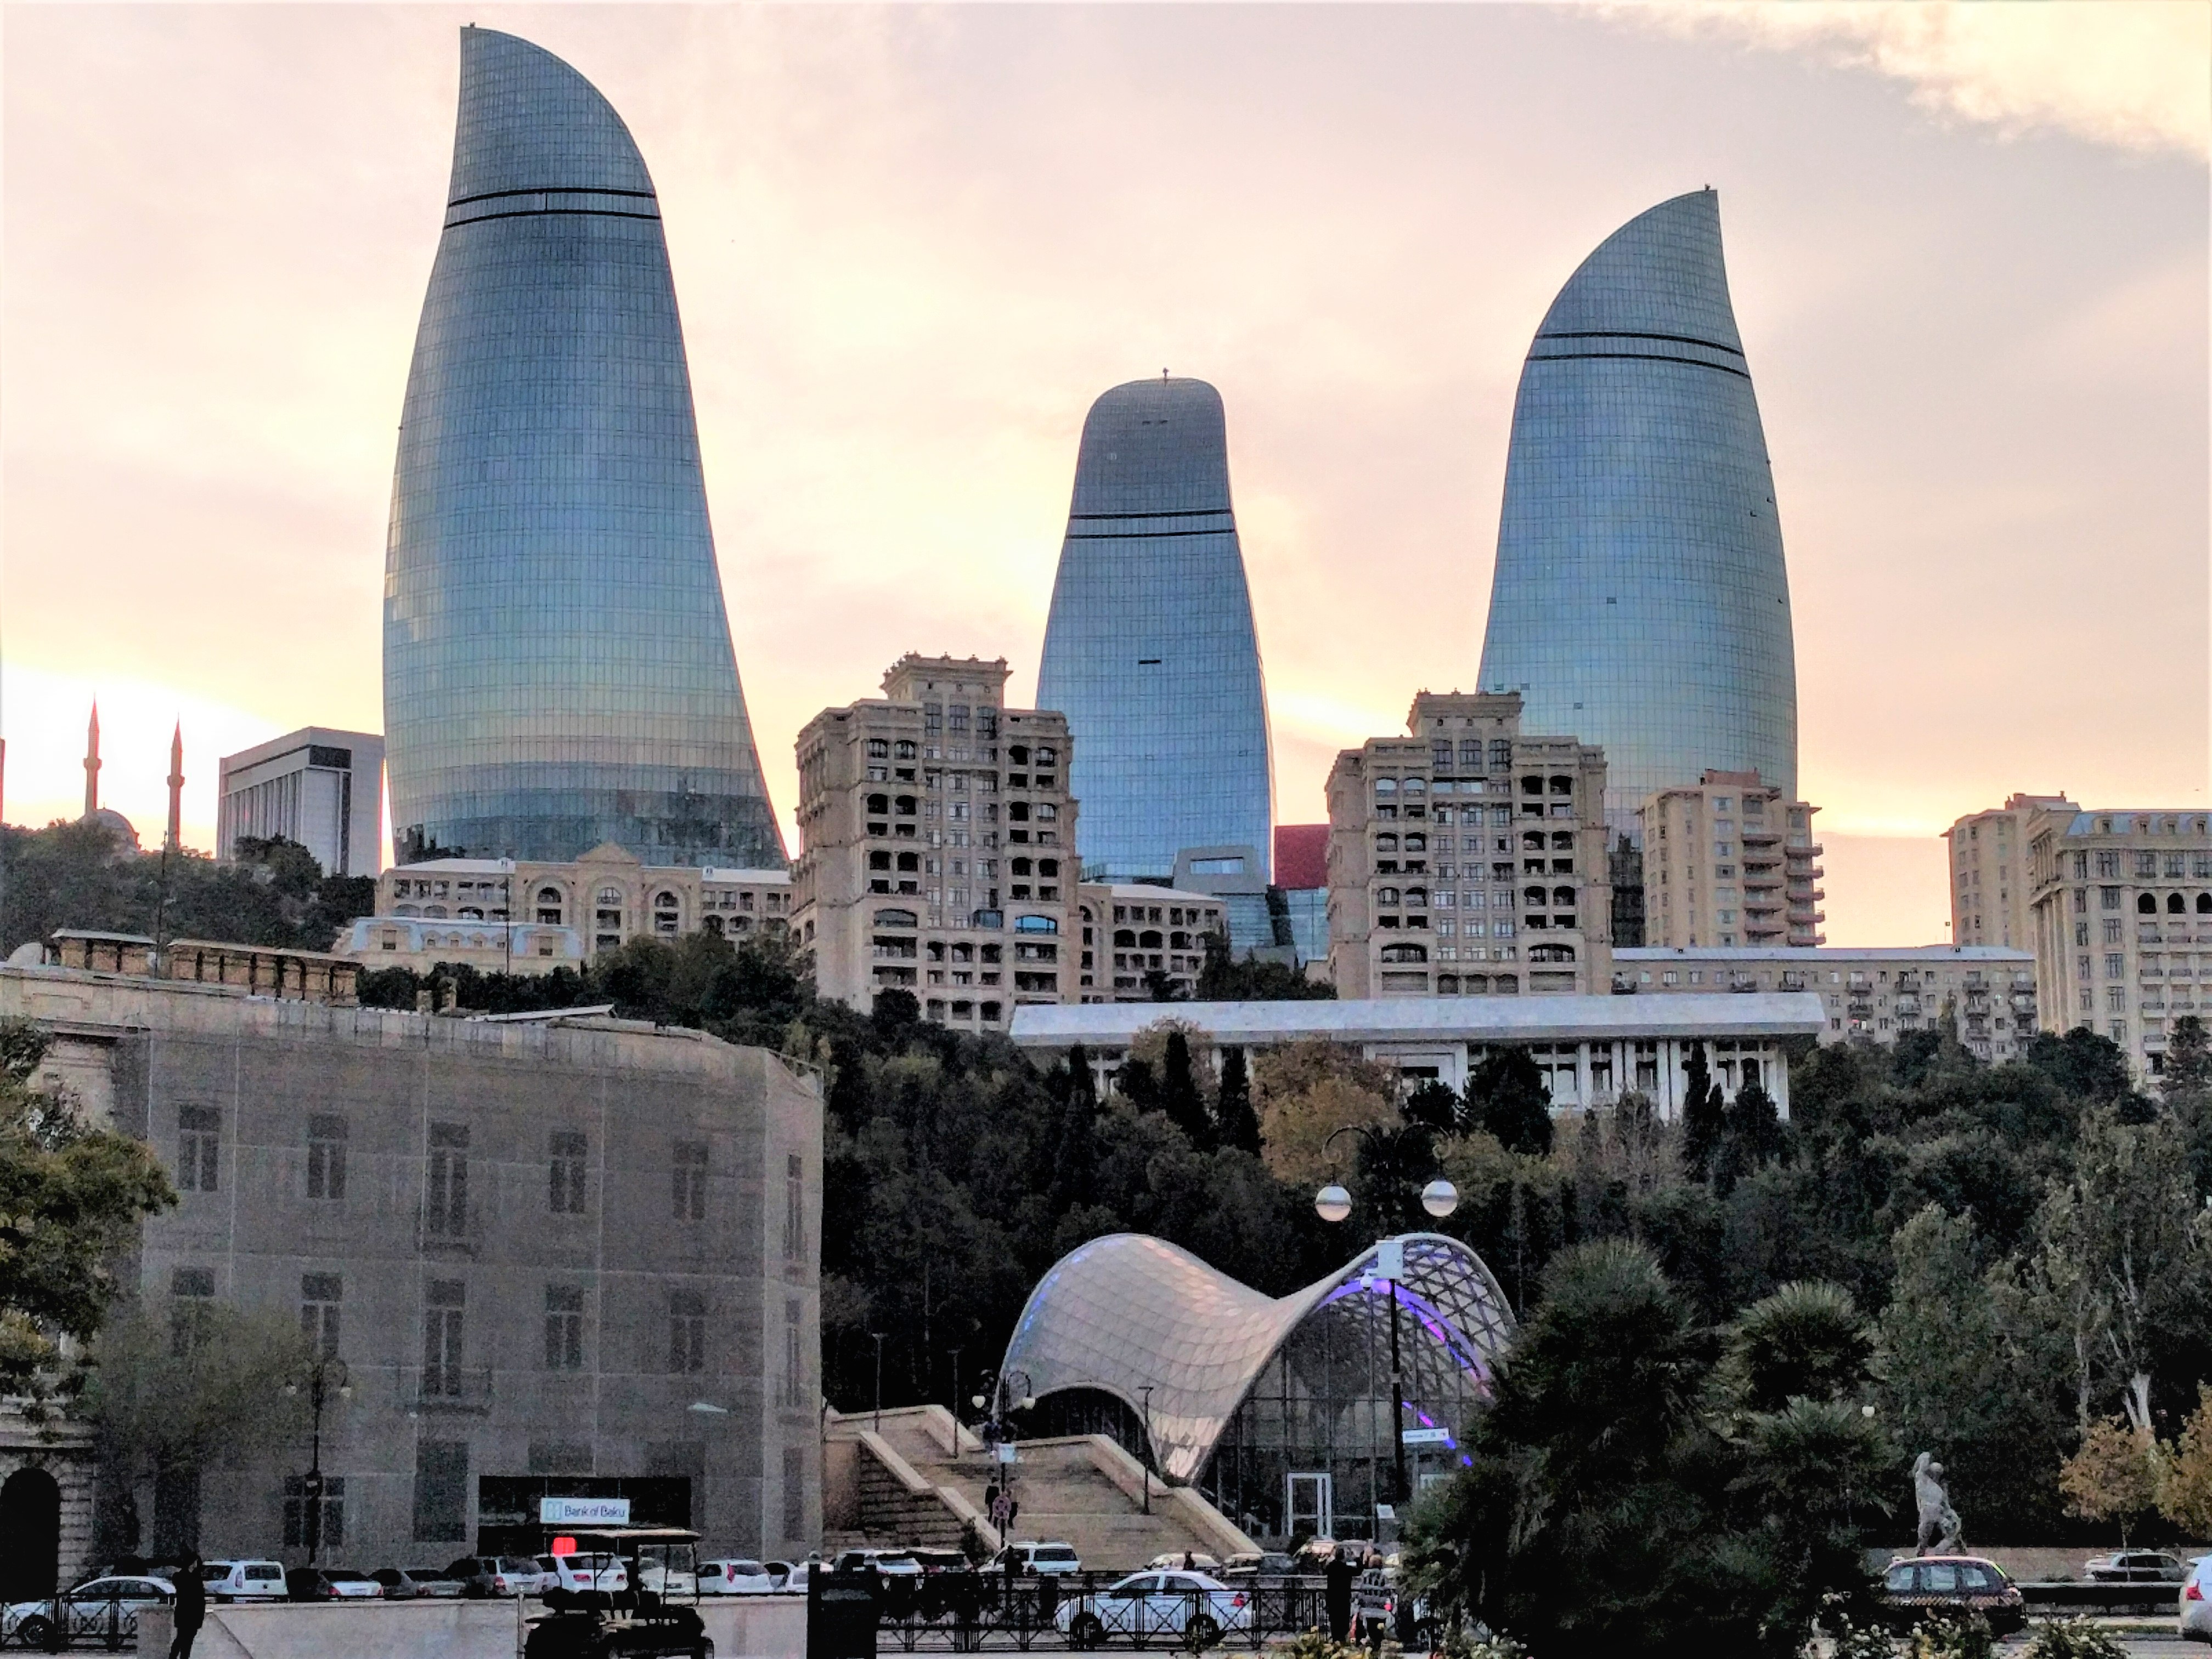 Flame buildings from waterfront Baku Azerbaijan. Image credit: Amanda@flickr